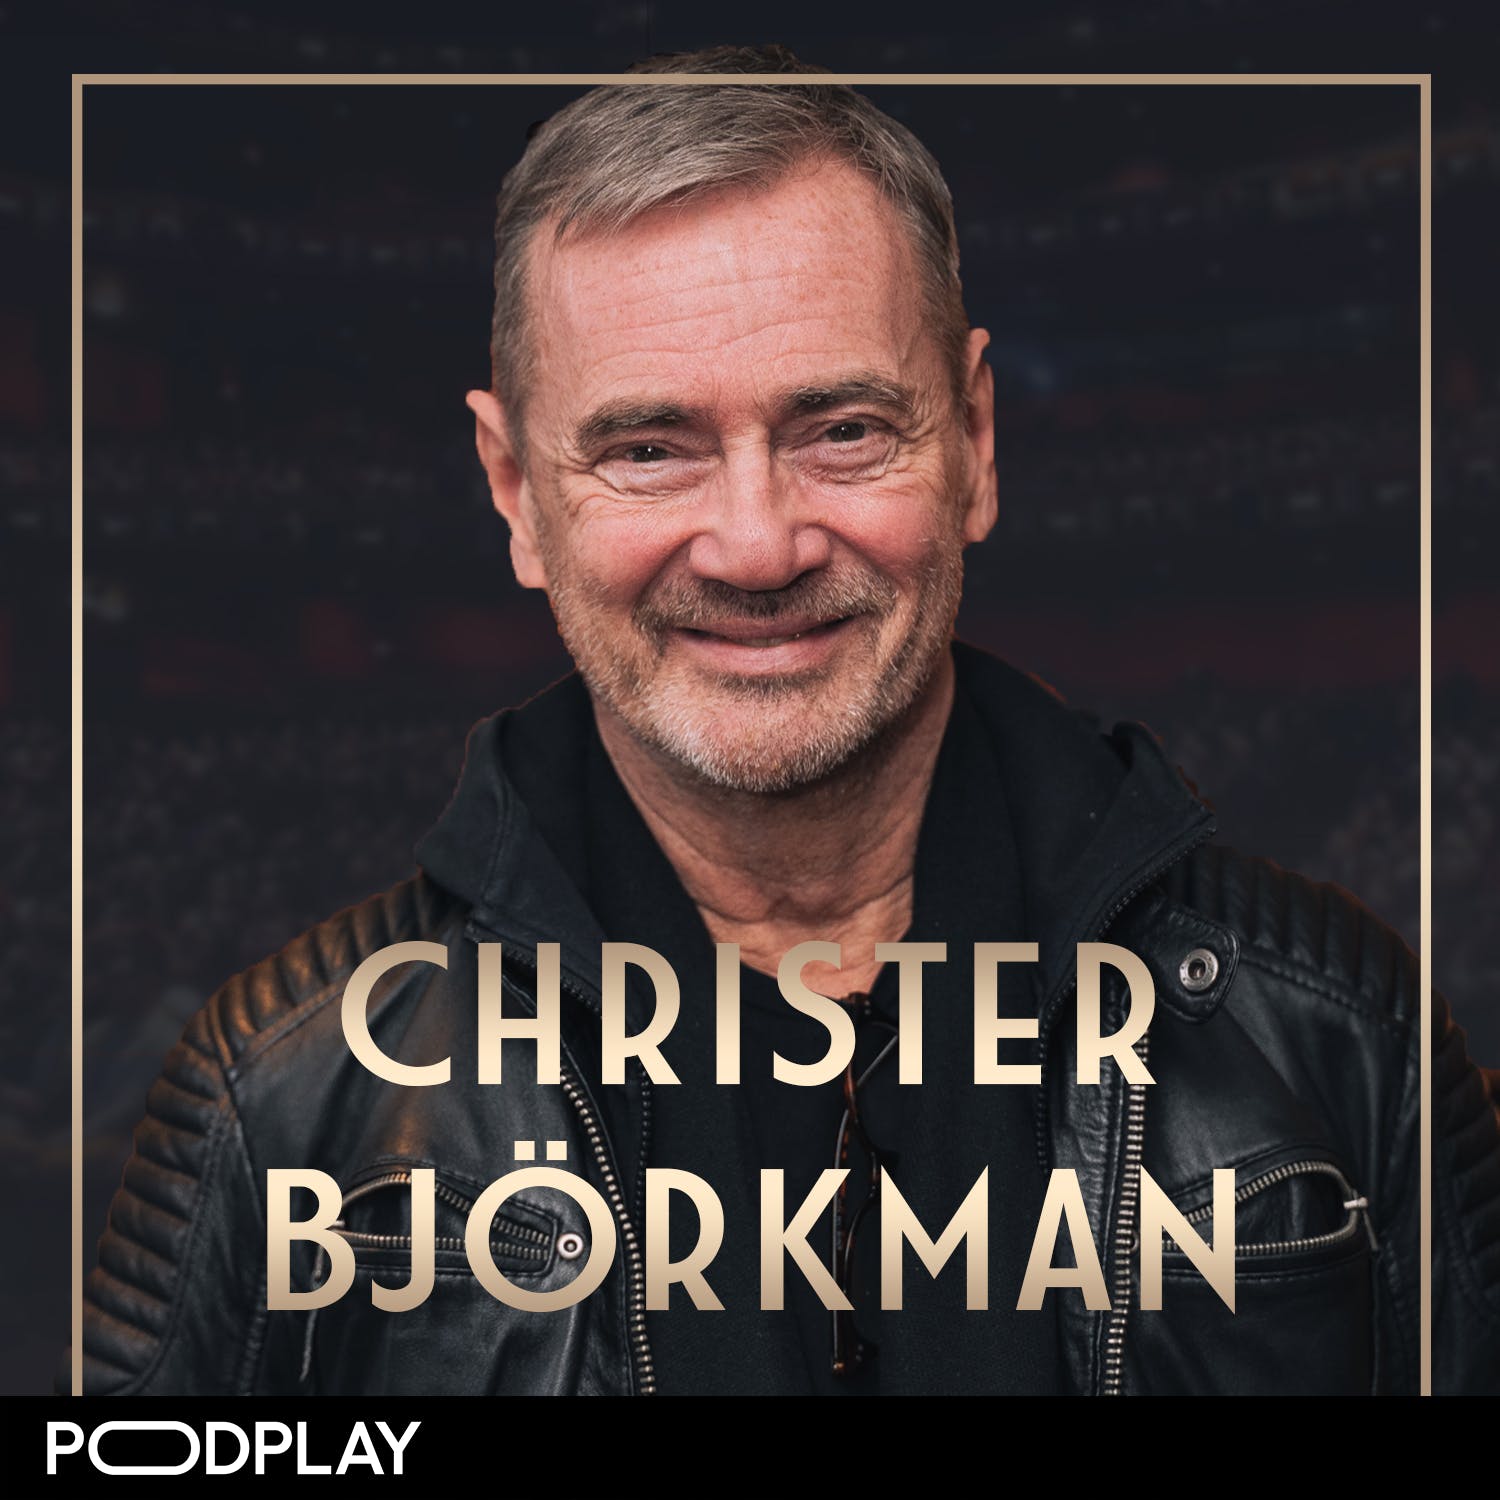 359. Christer Björkman - Klokskap begränsar livet, Original